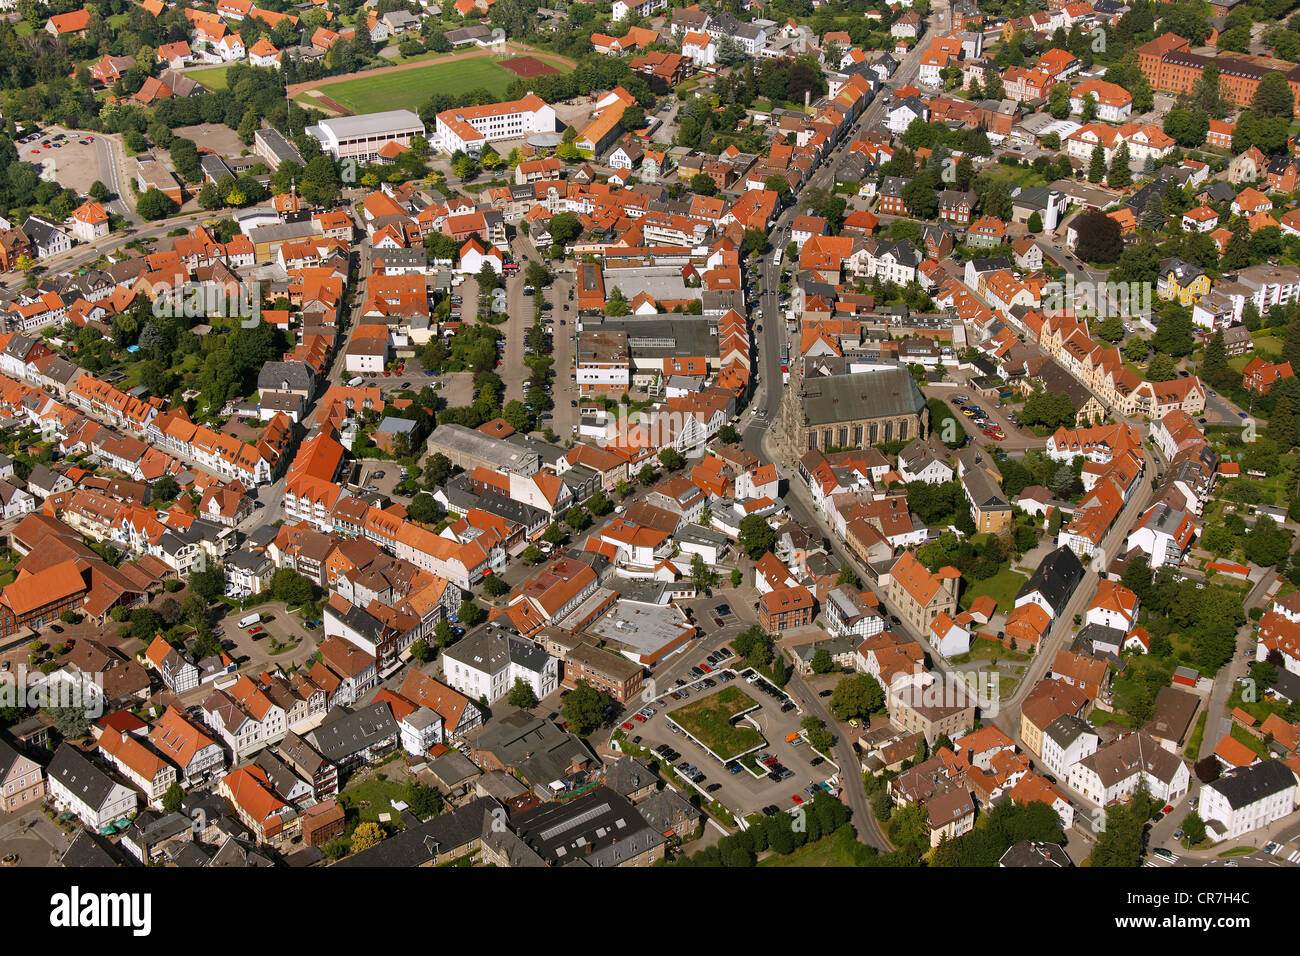 Vue aérienne, Rinteln, district de Schaumburg, Basse-Saxe, Allemagne, Europe Banque D'Images